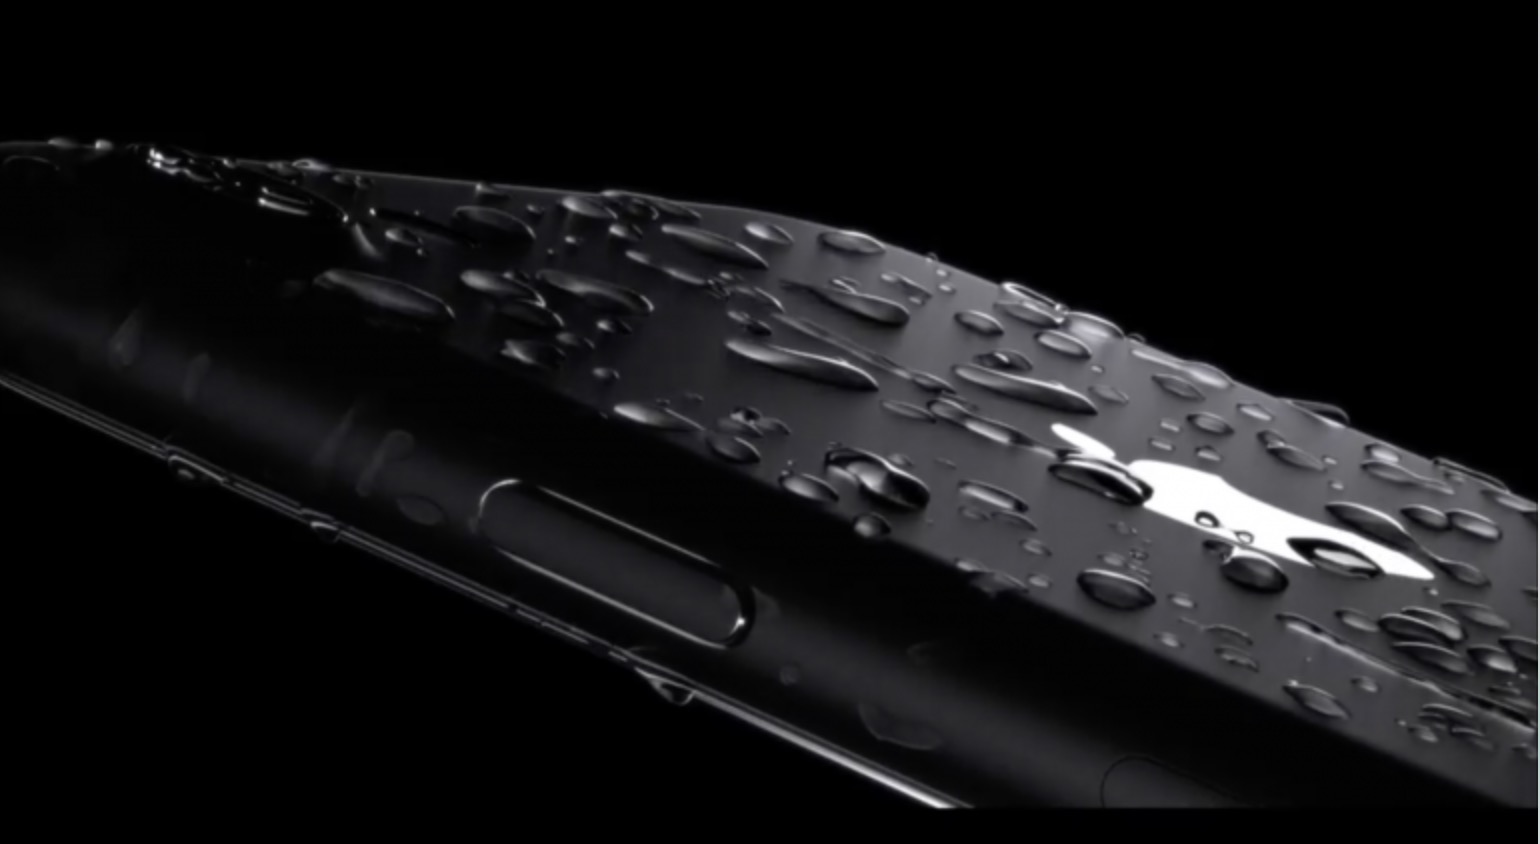 iPhone 7 waterproof